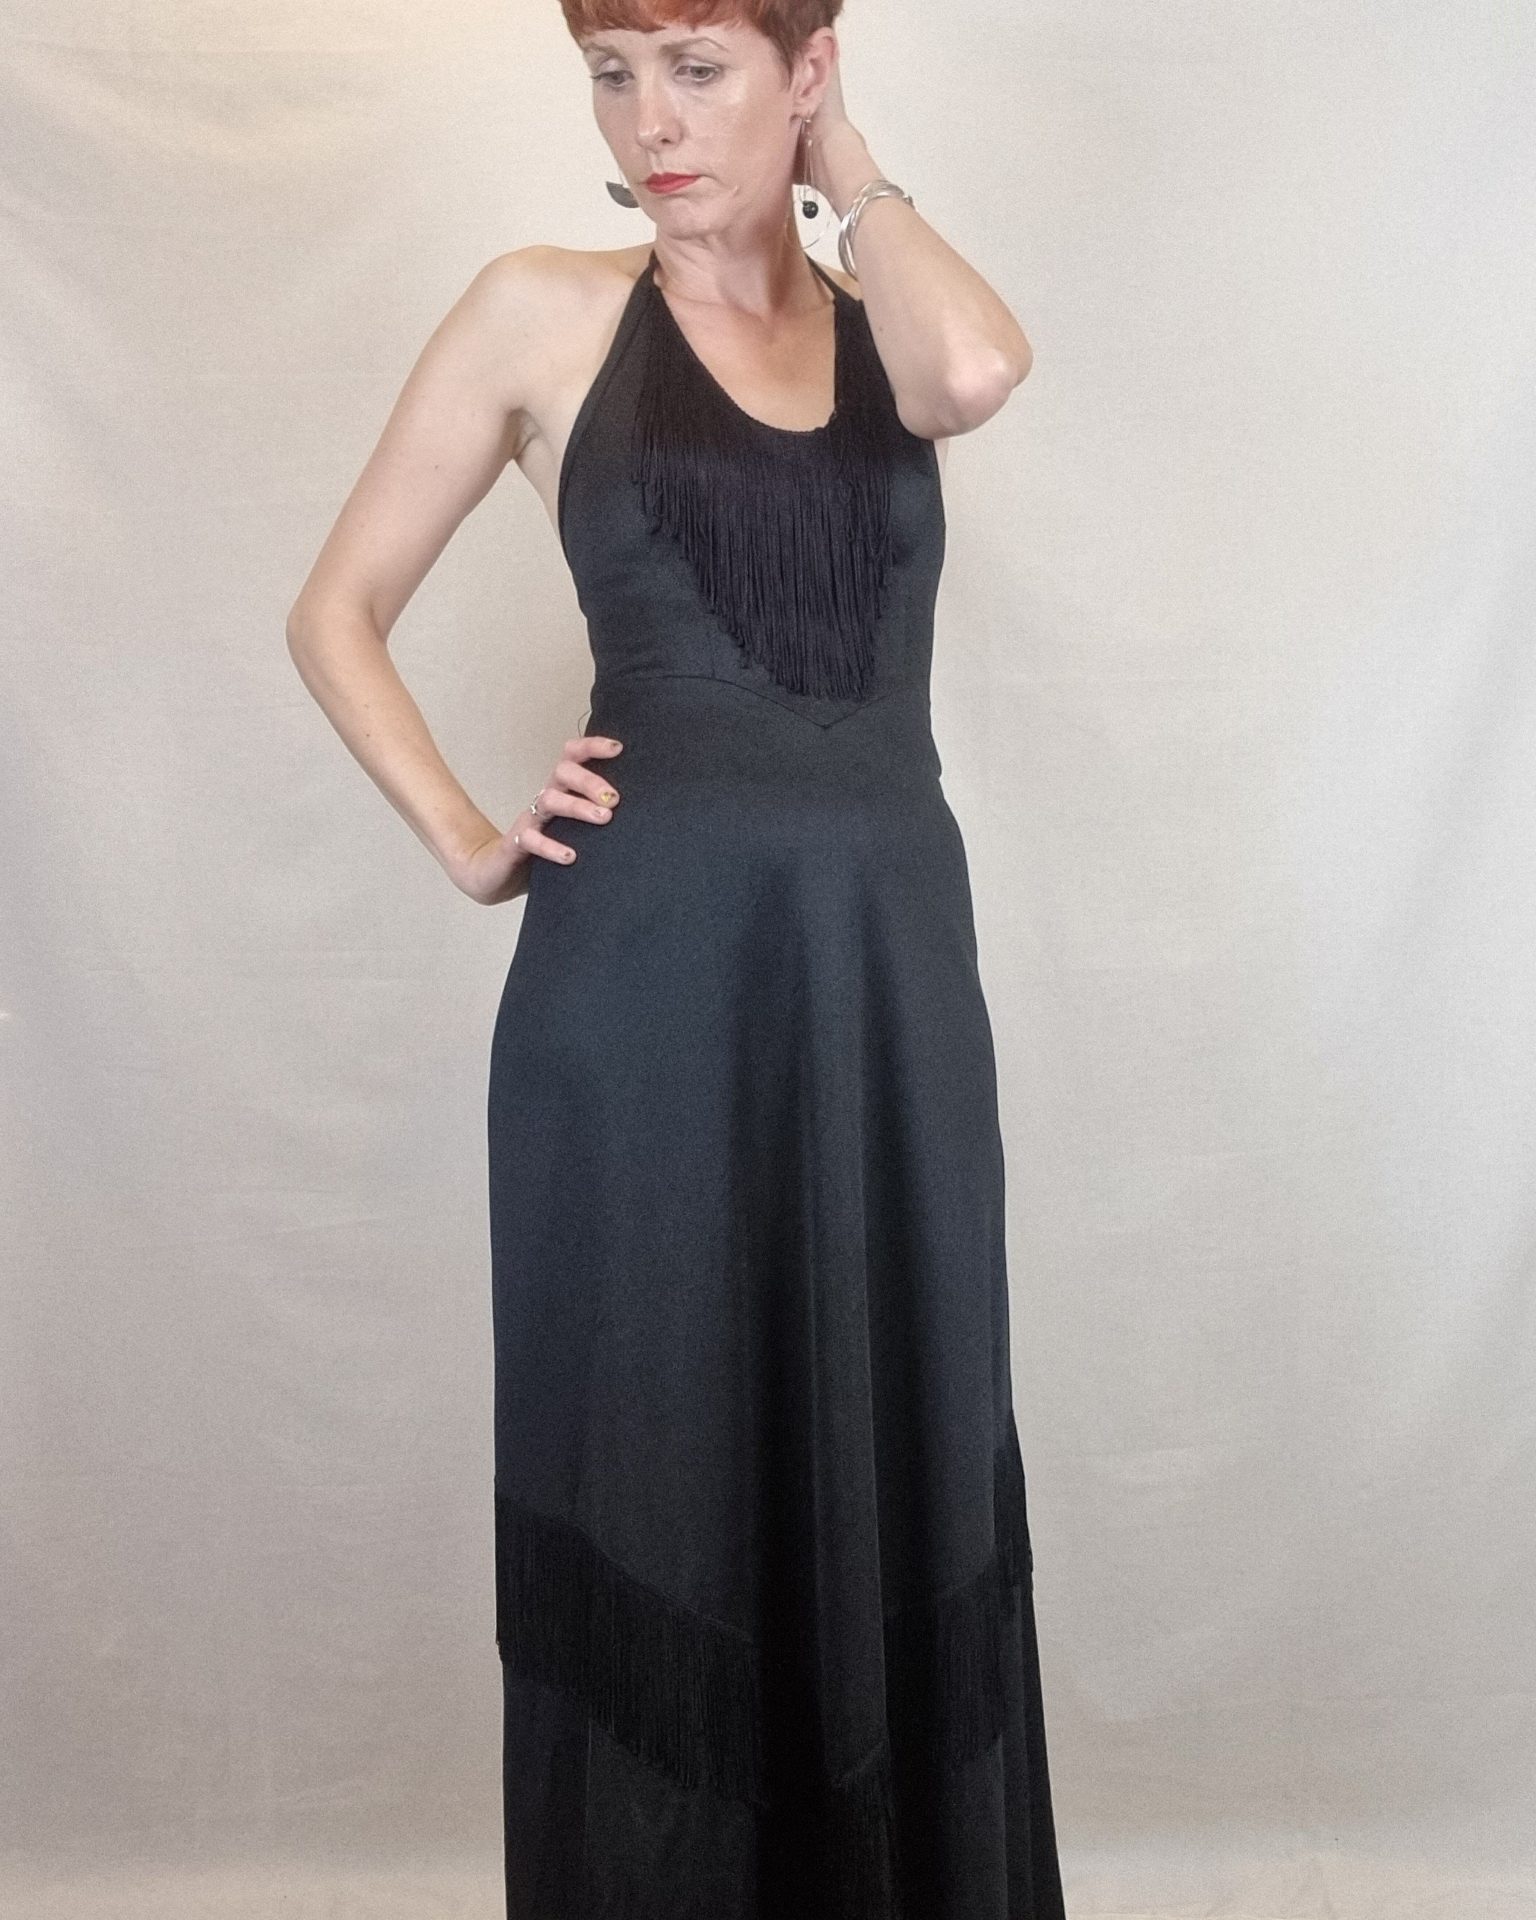 Black Halter Neck Fringed Maxi Dress UK Size 8 - Rhubarb Jumble